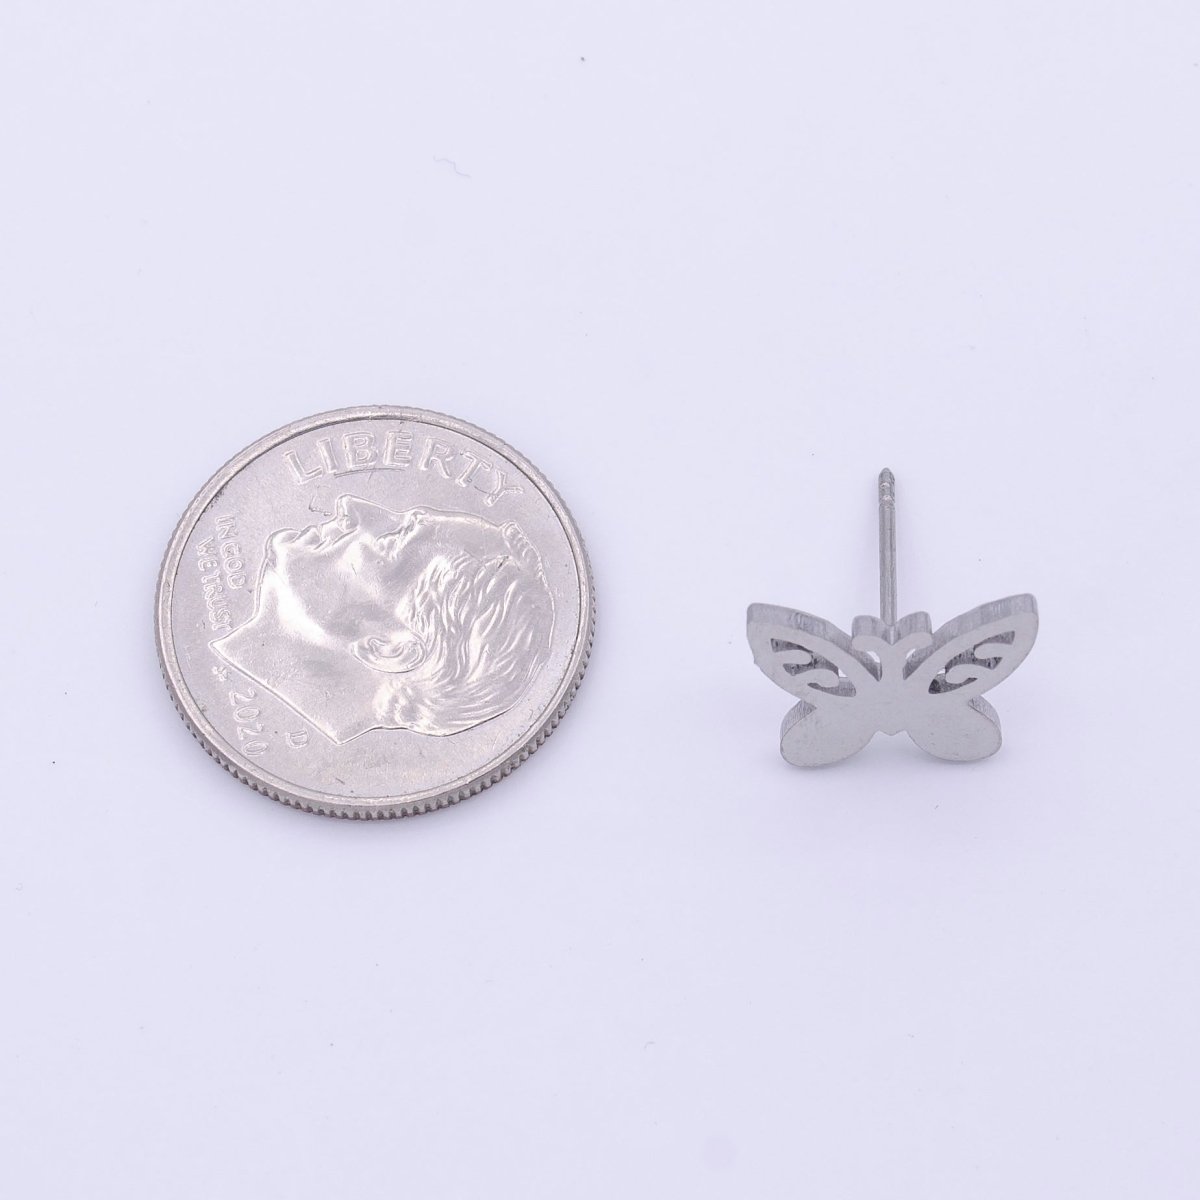 Stainless Steel Artisan Butterfly Mariposa Silver Studs Earrings | Y-254 - DLUXCA